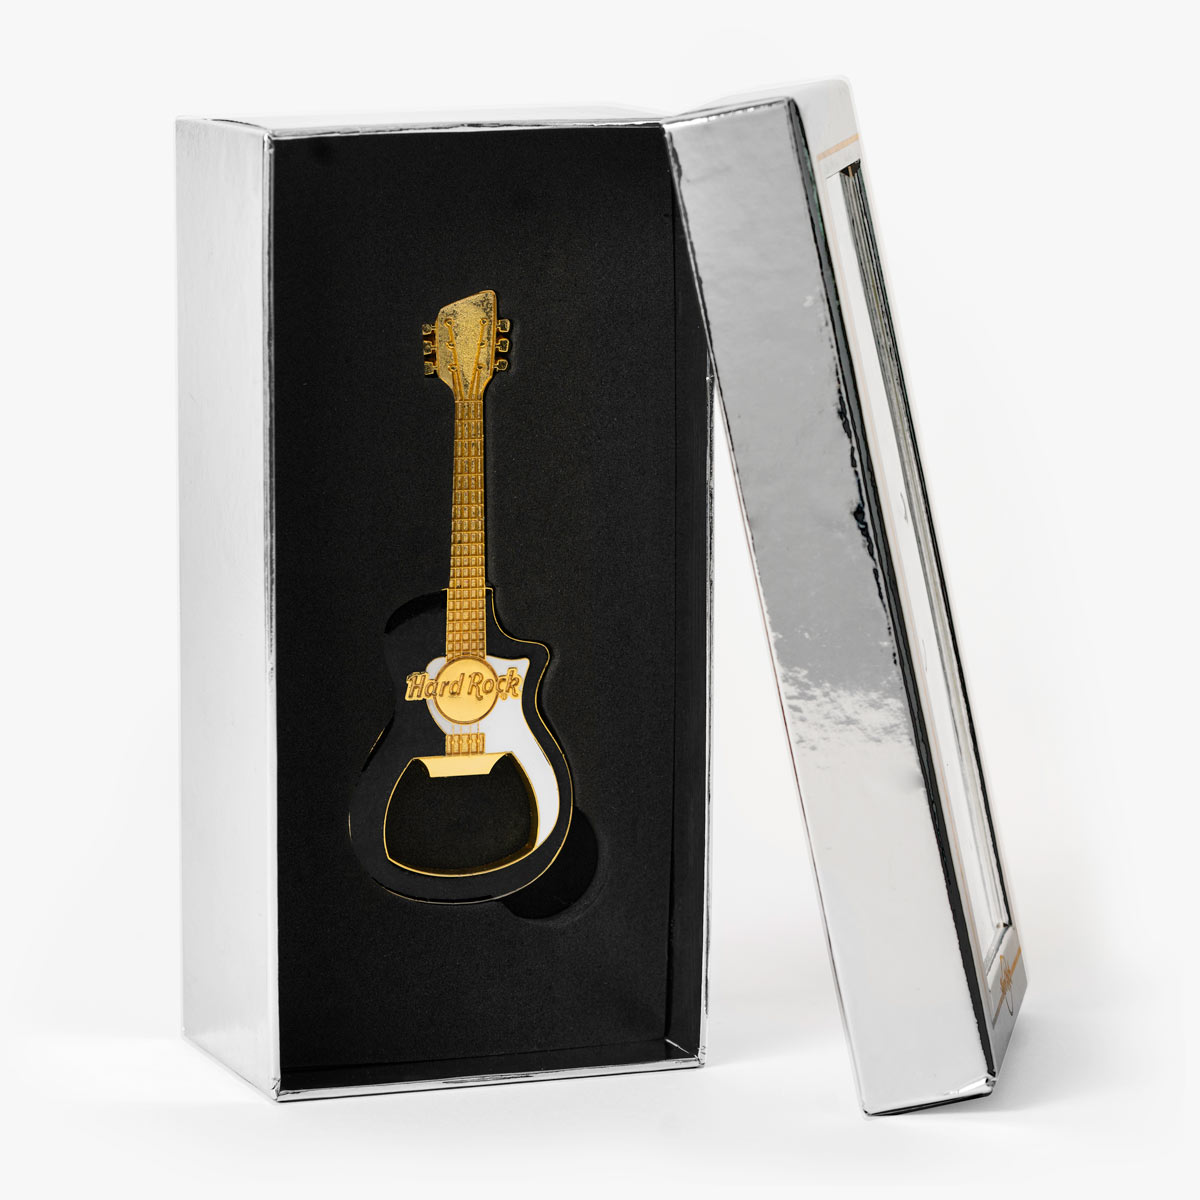 Hard Rock Metallic Guitar Bottle Opener Magnet in Black and Gold image number 3